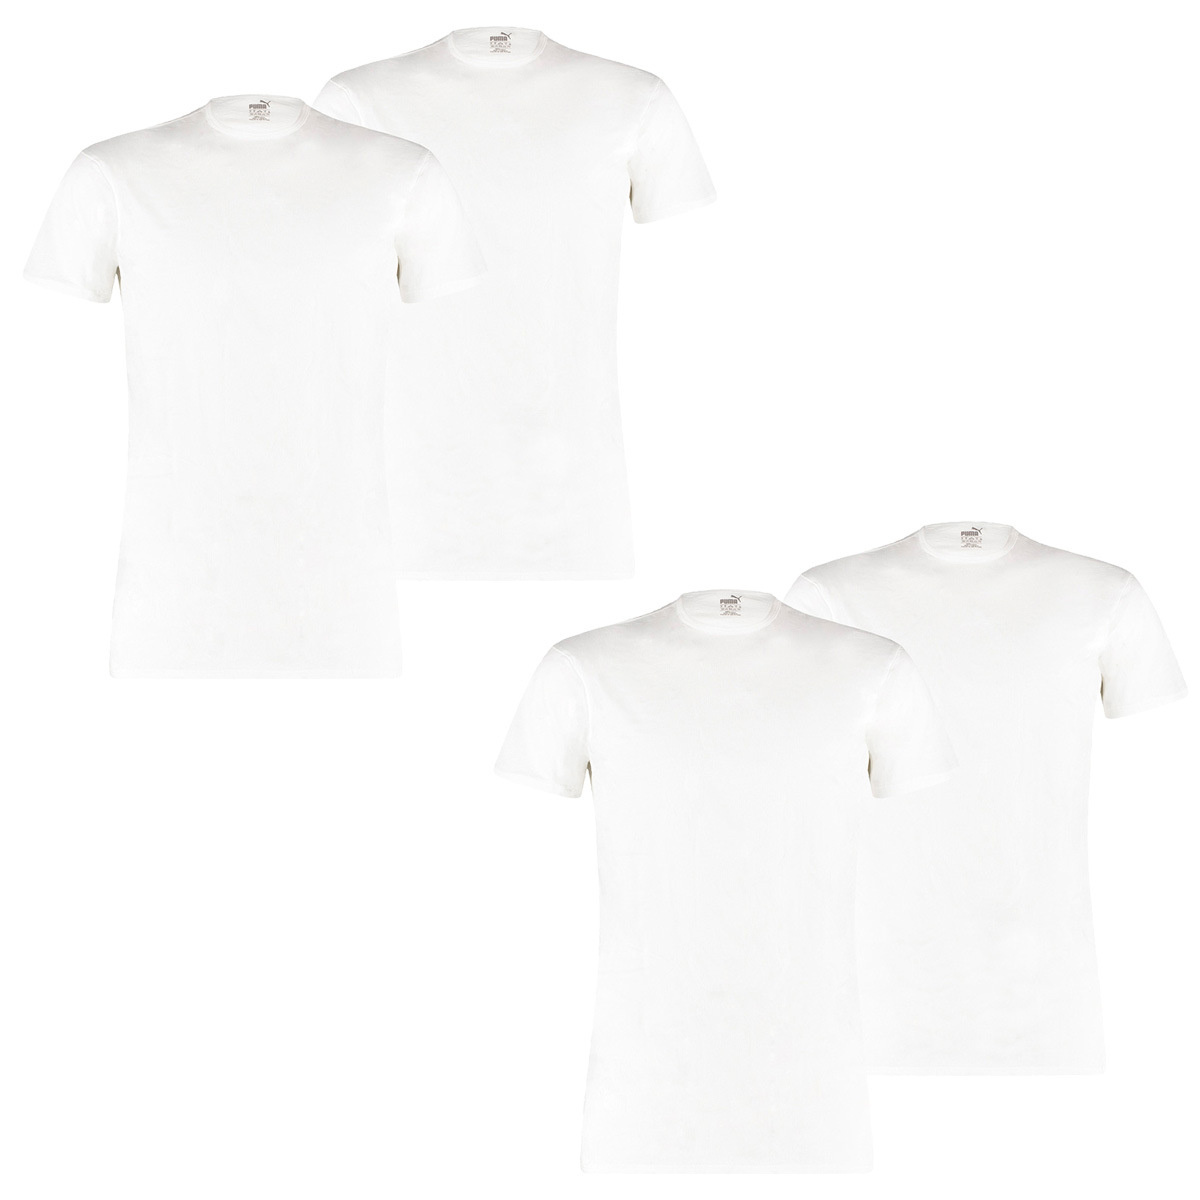 Puma 8 er Pack Basic Crew T-Shirt Men Herren Unterhemd Rundhals, Bekleidungsgröße:XL, Farbe:300 - White